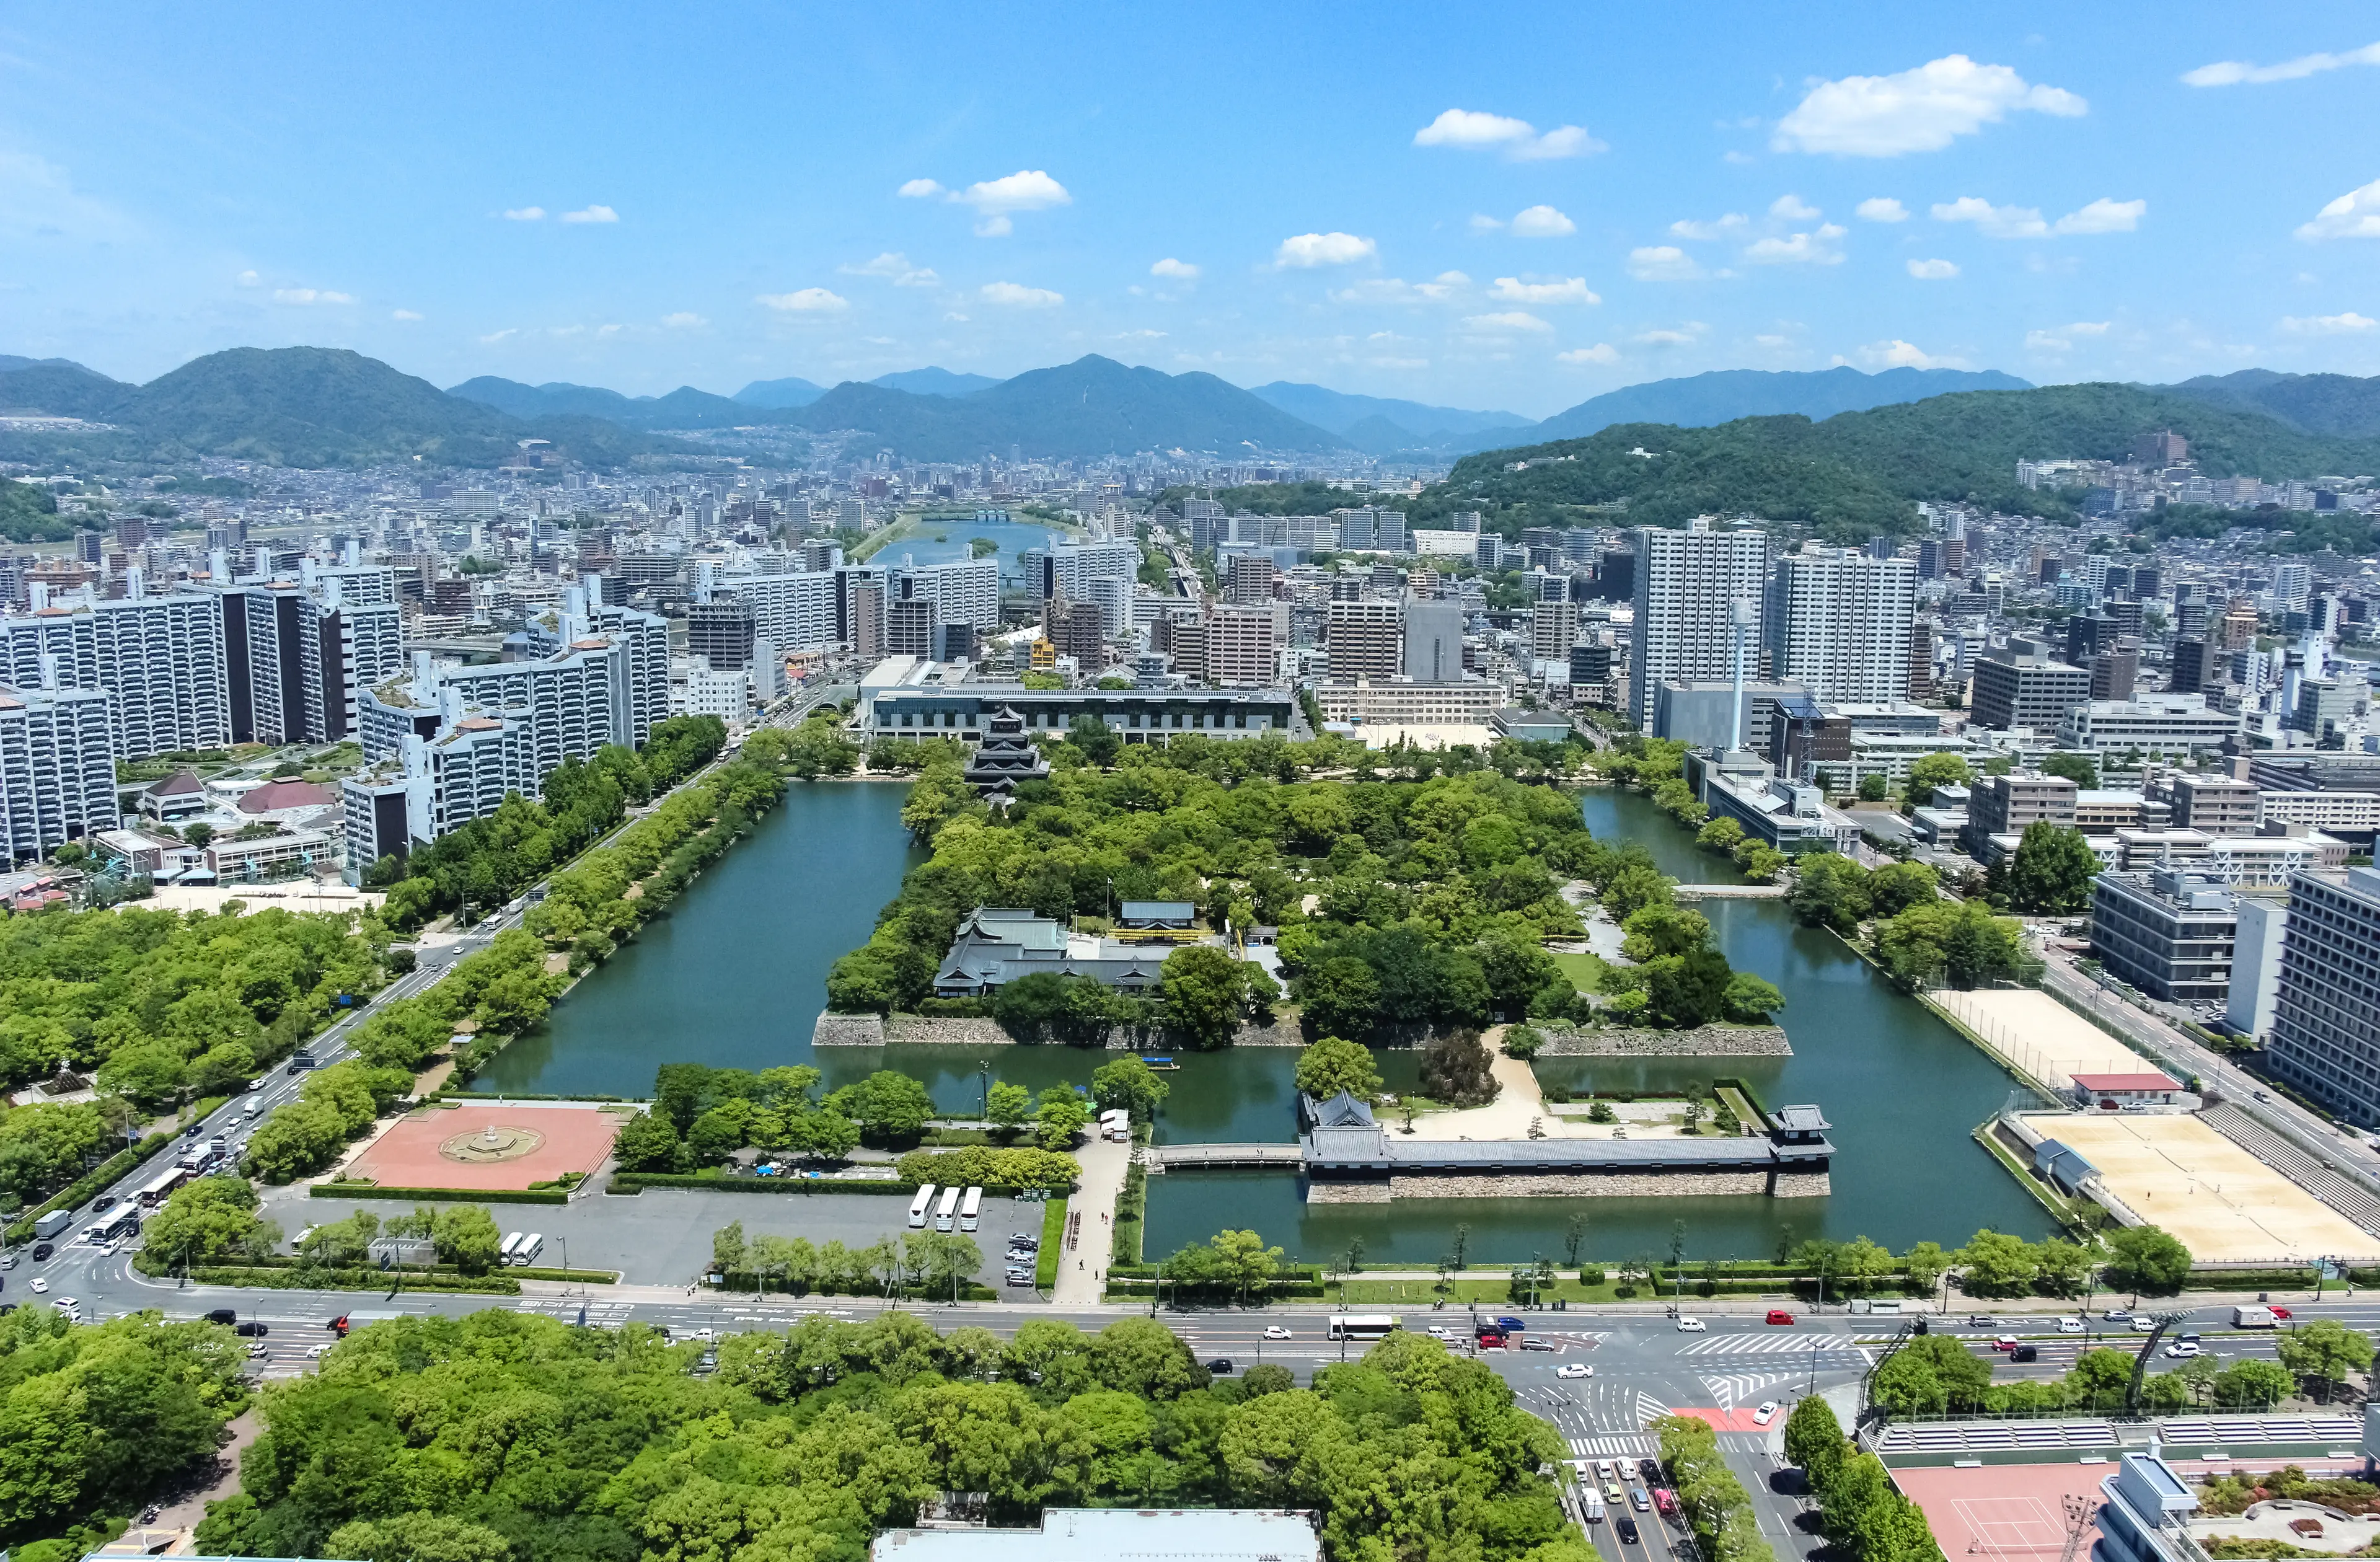 2-Day Solo Adventure: Outdoor Activities in Hiroshima, Japan